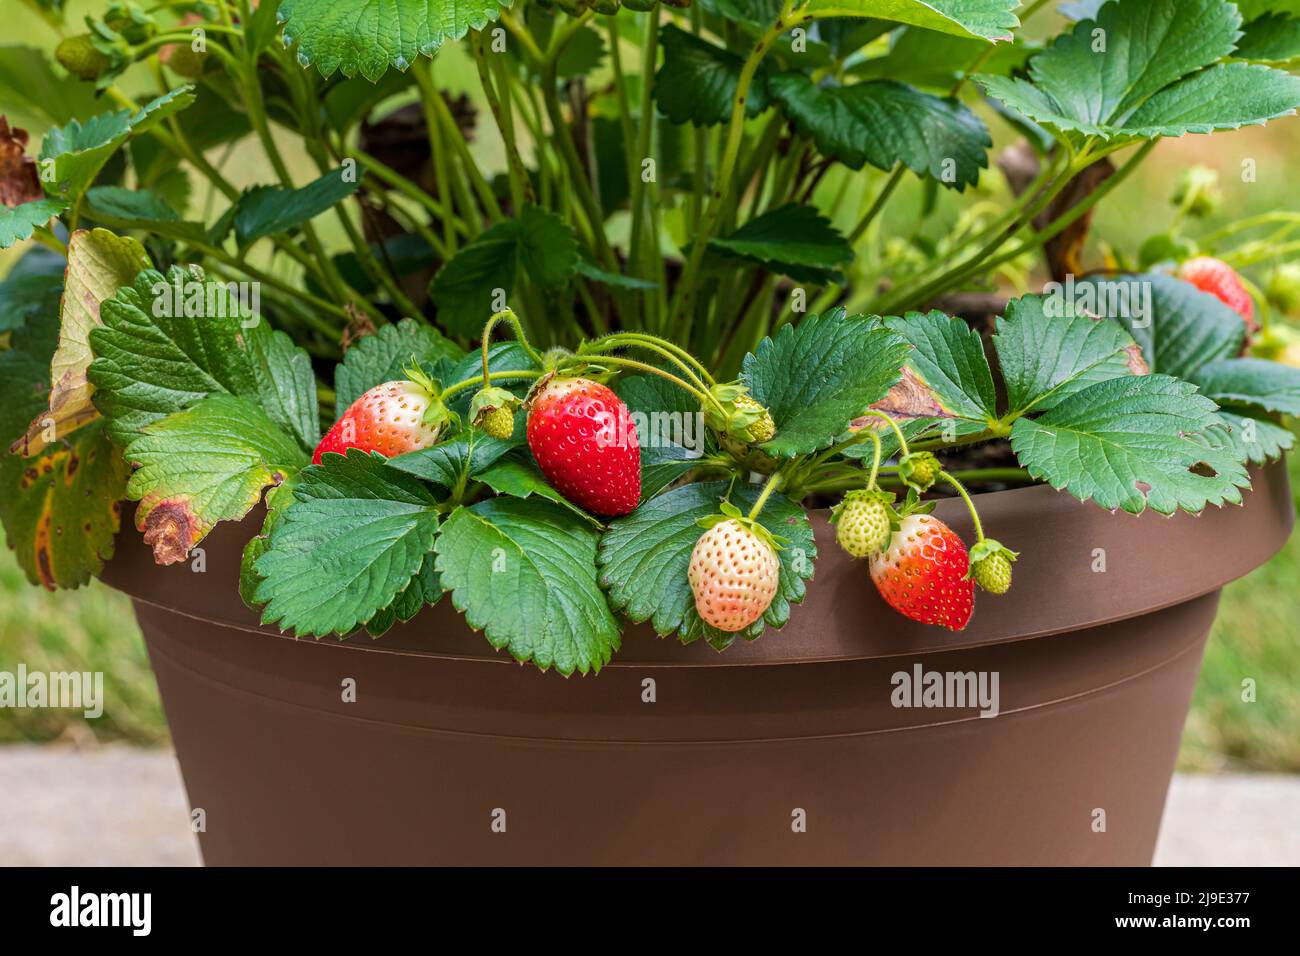 Planta de fresa con fruta madura creciendo en maceta. Jardinería de contenedores, horticultura y concepto orgánico Foto de stock